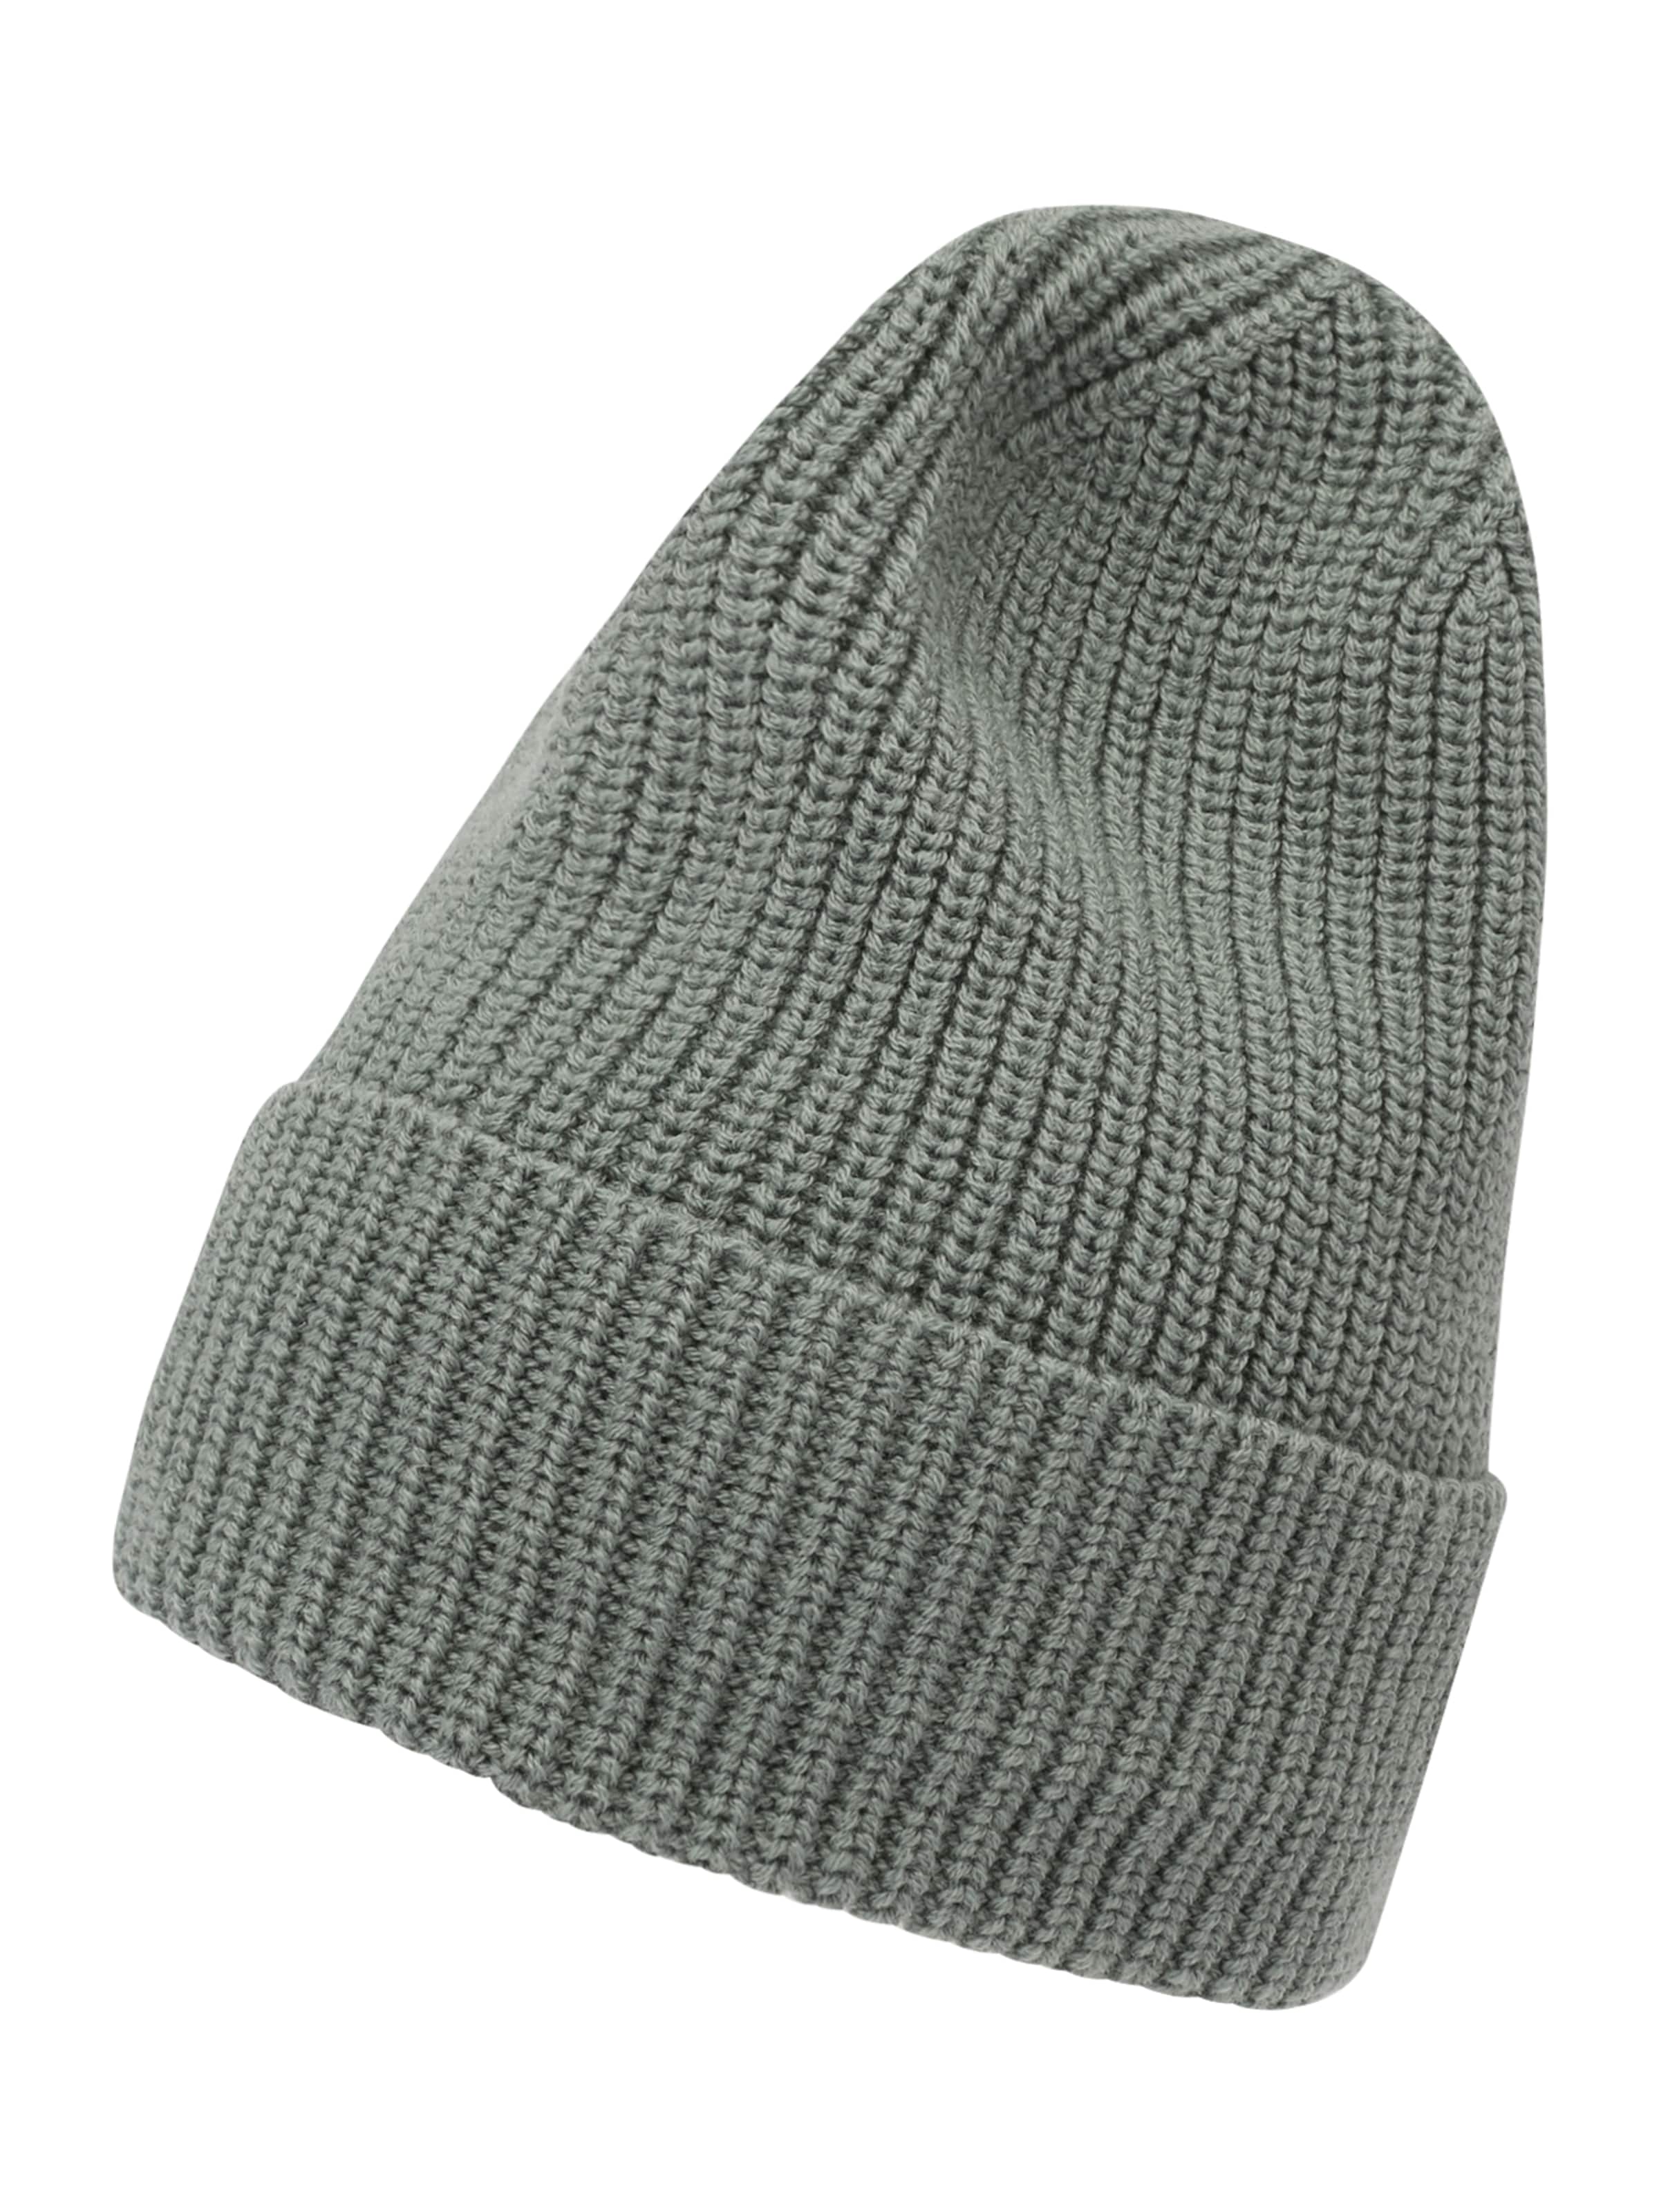 Strickmütze aus einem komfortablen Baumwollmix Hüte & Caps Hüte ABOUT YOU Damen Accessoires Mützen 